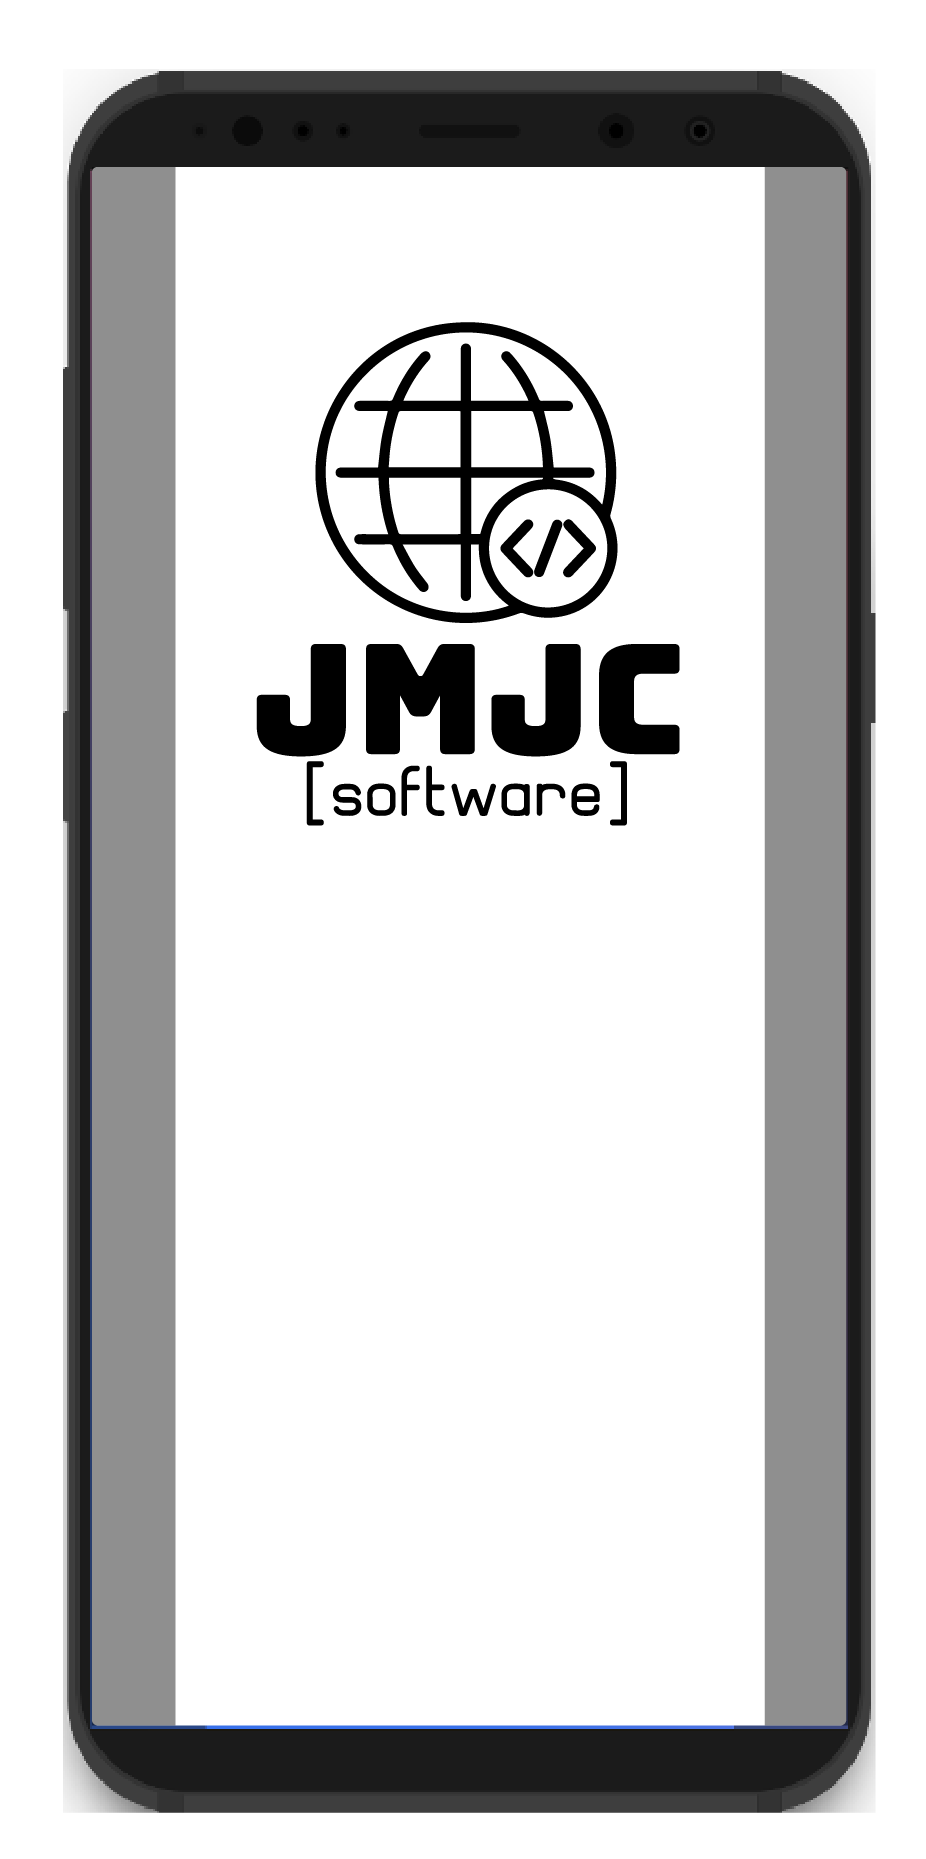 JMJC Software